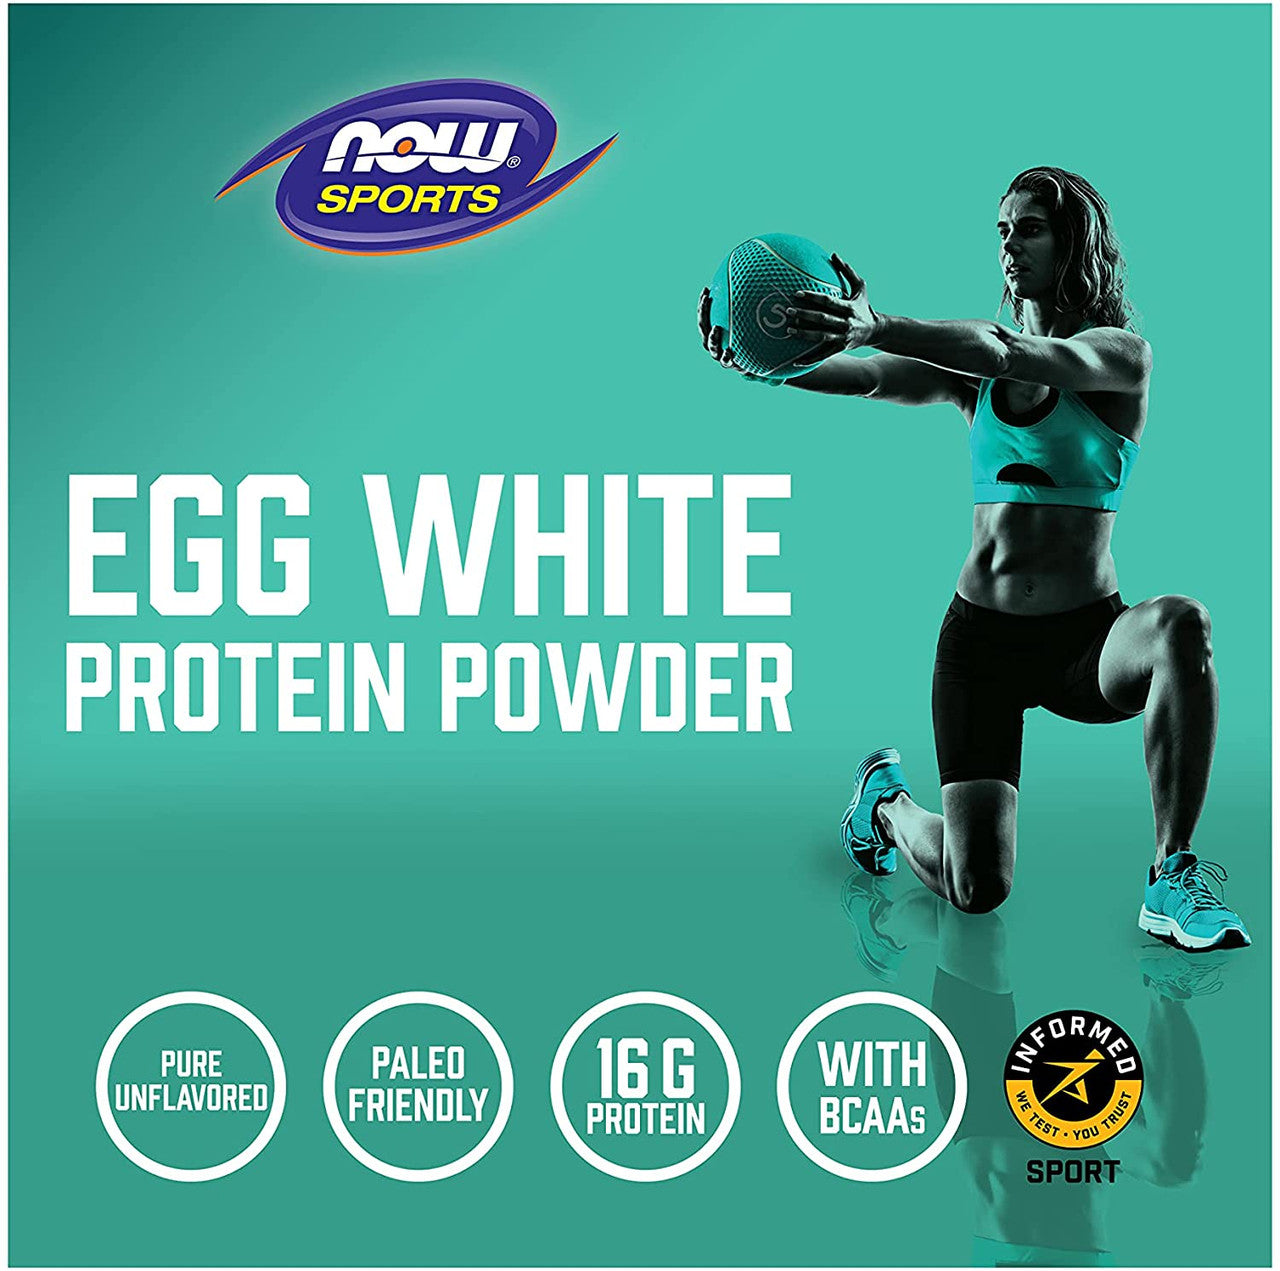 Now EggWhite Protein Highlight